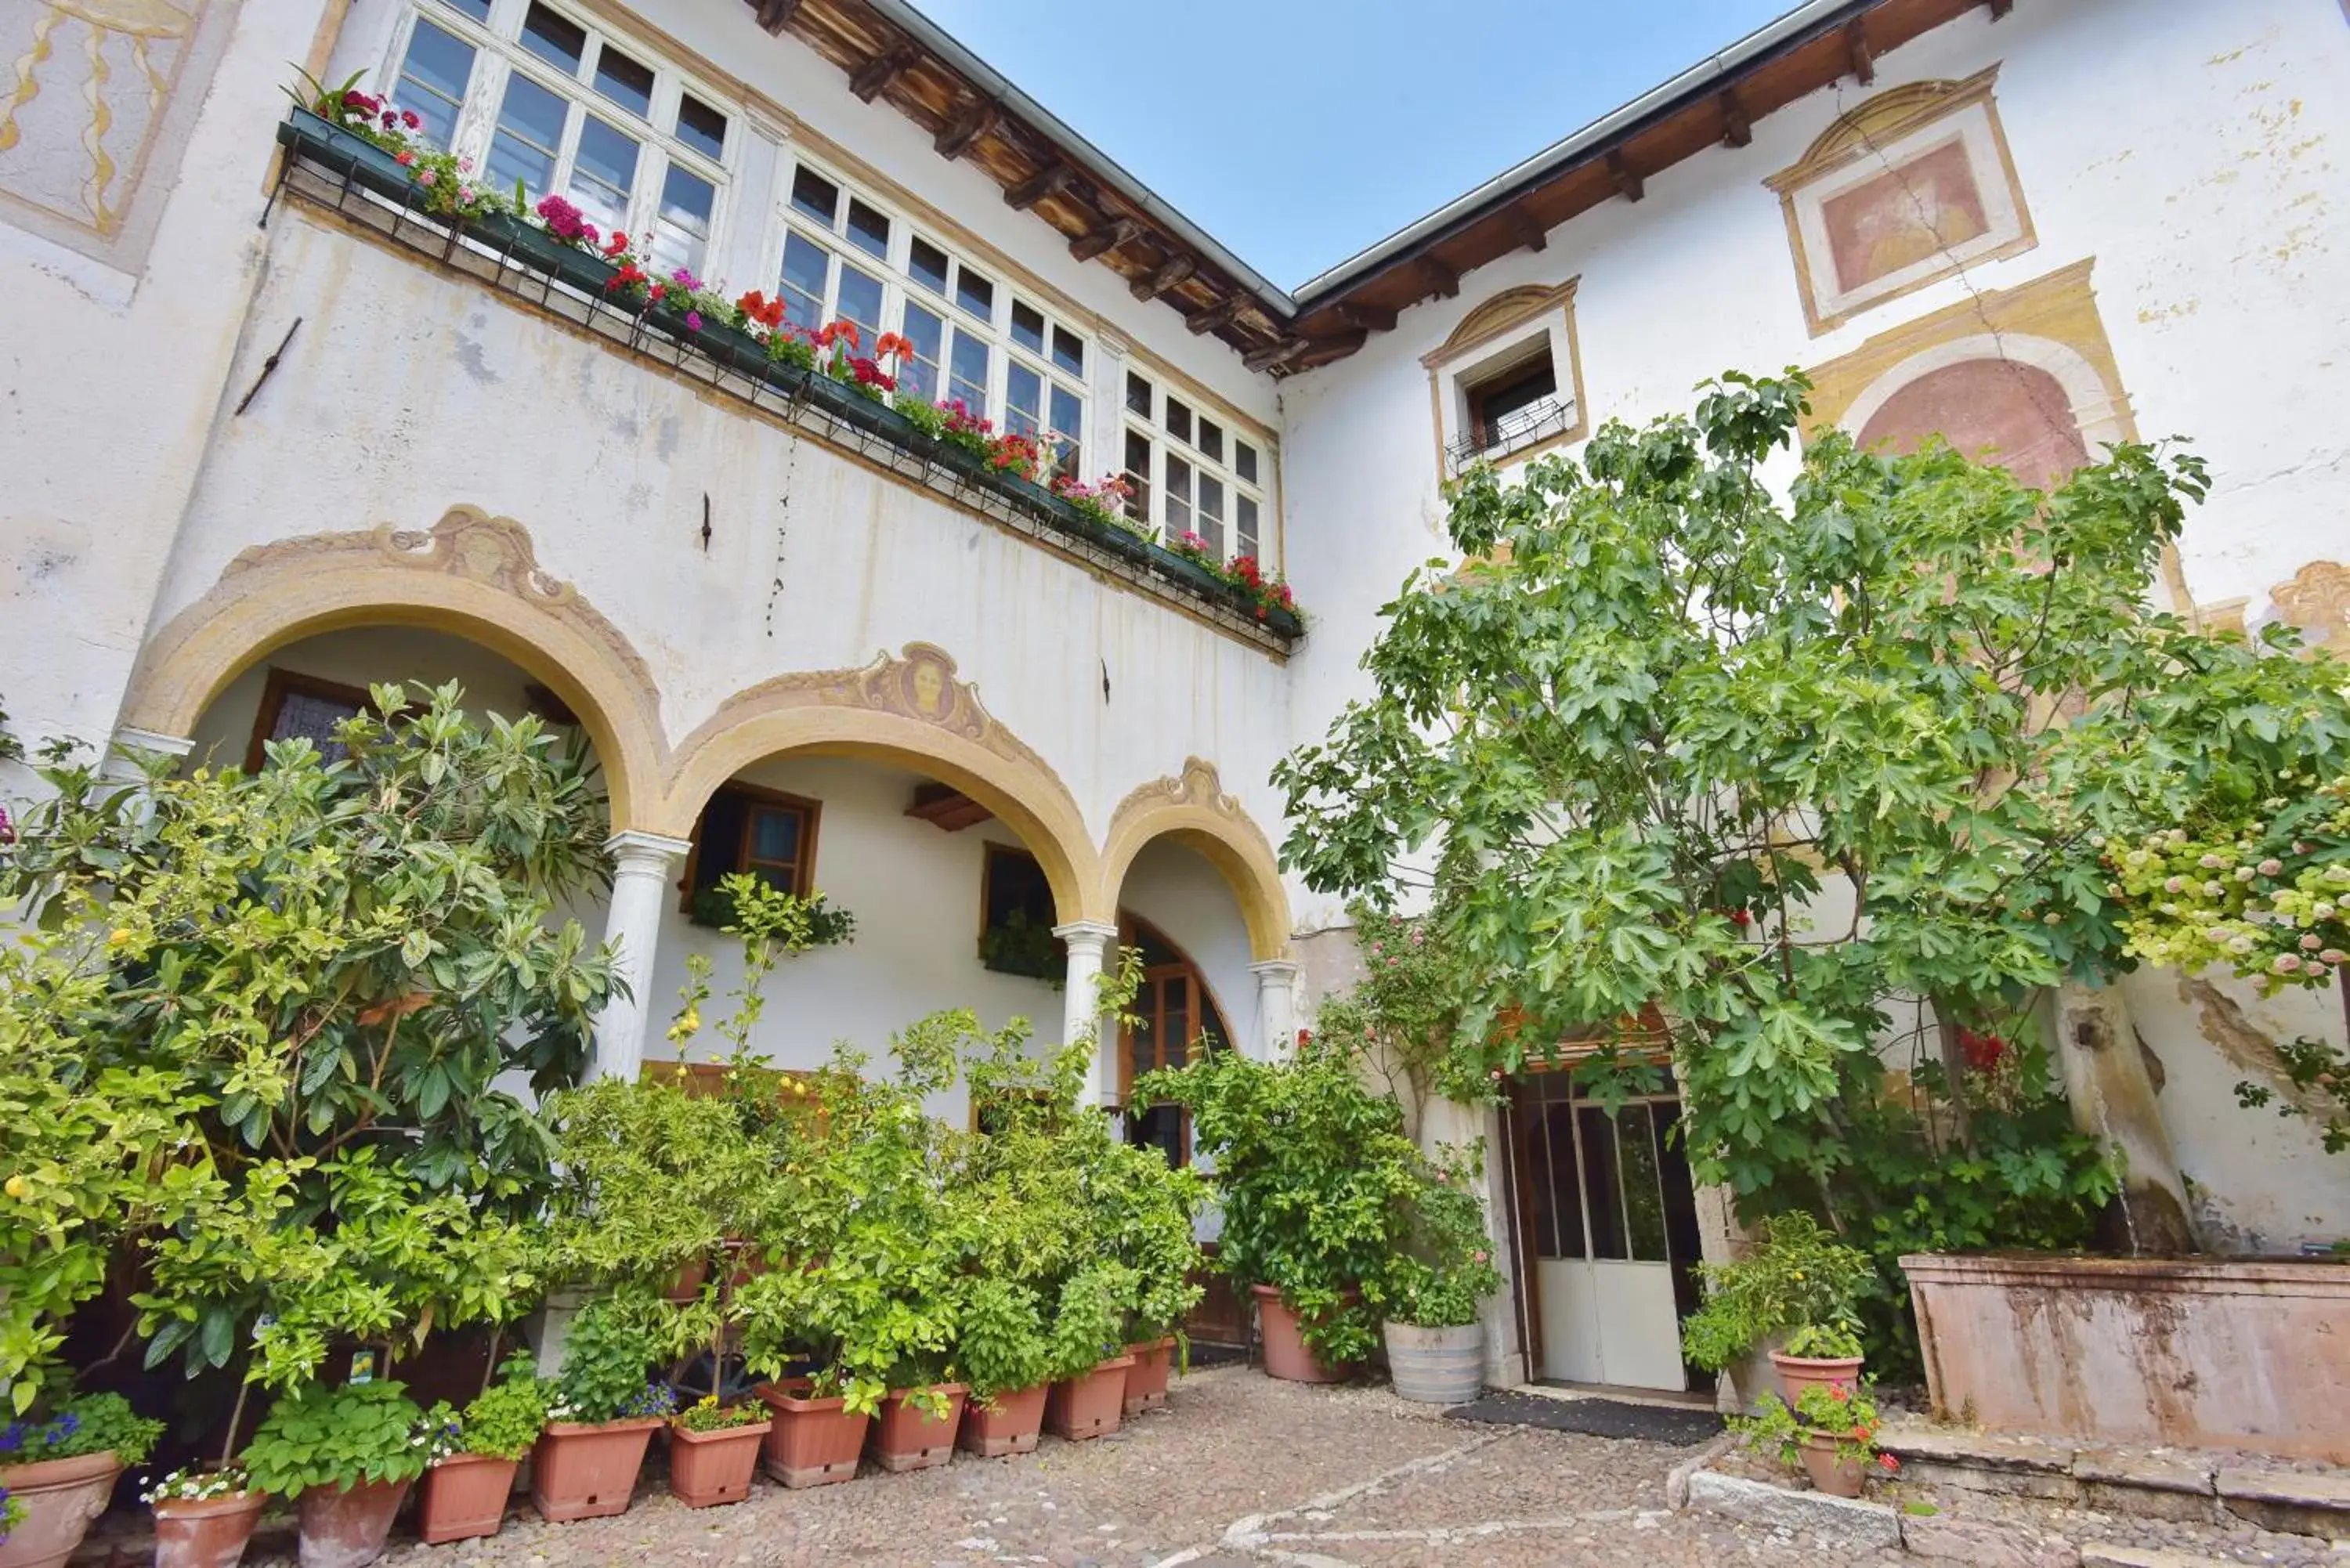 Garden view, Property Building in Villa Bertagnolli - Locanda Del Bel Sorriso